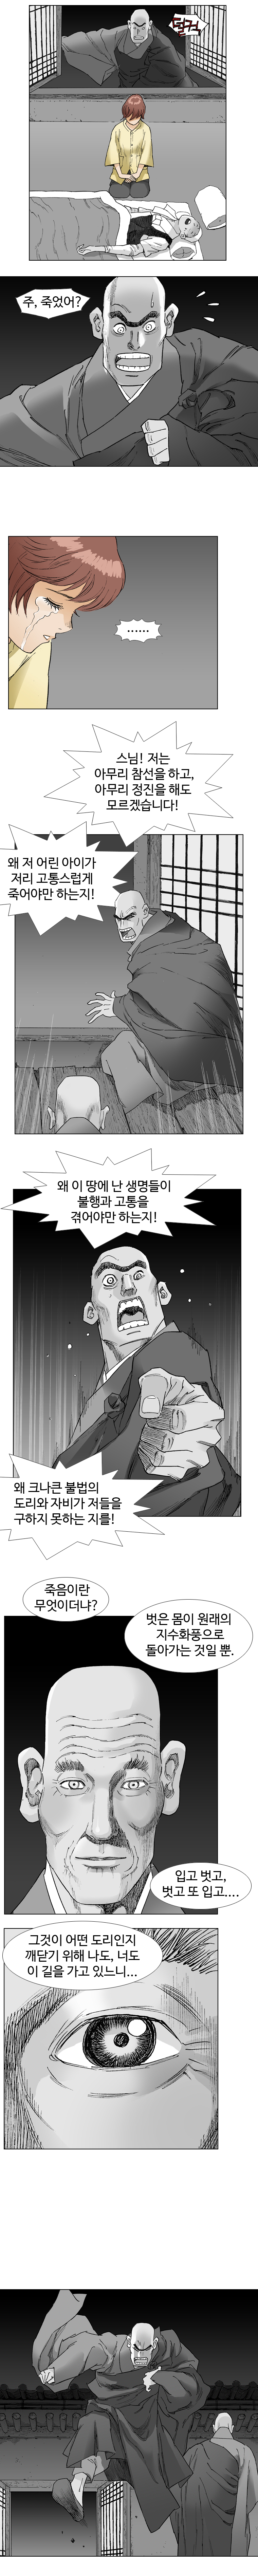 웹툰 백초월 2화-9